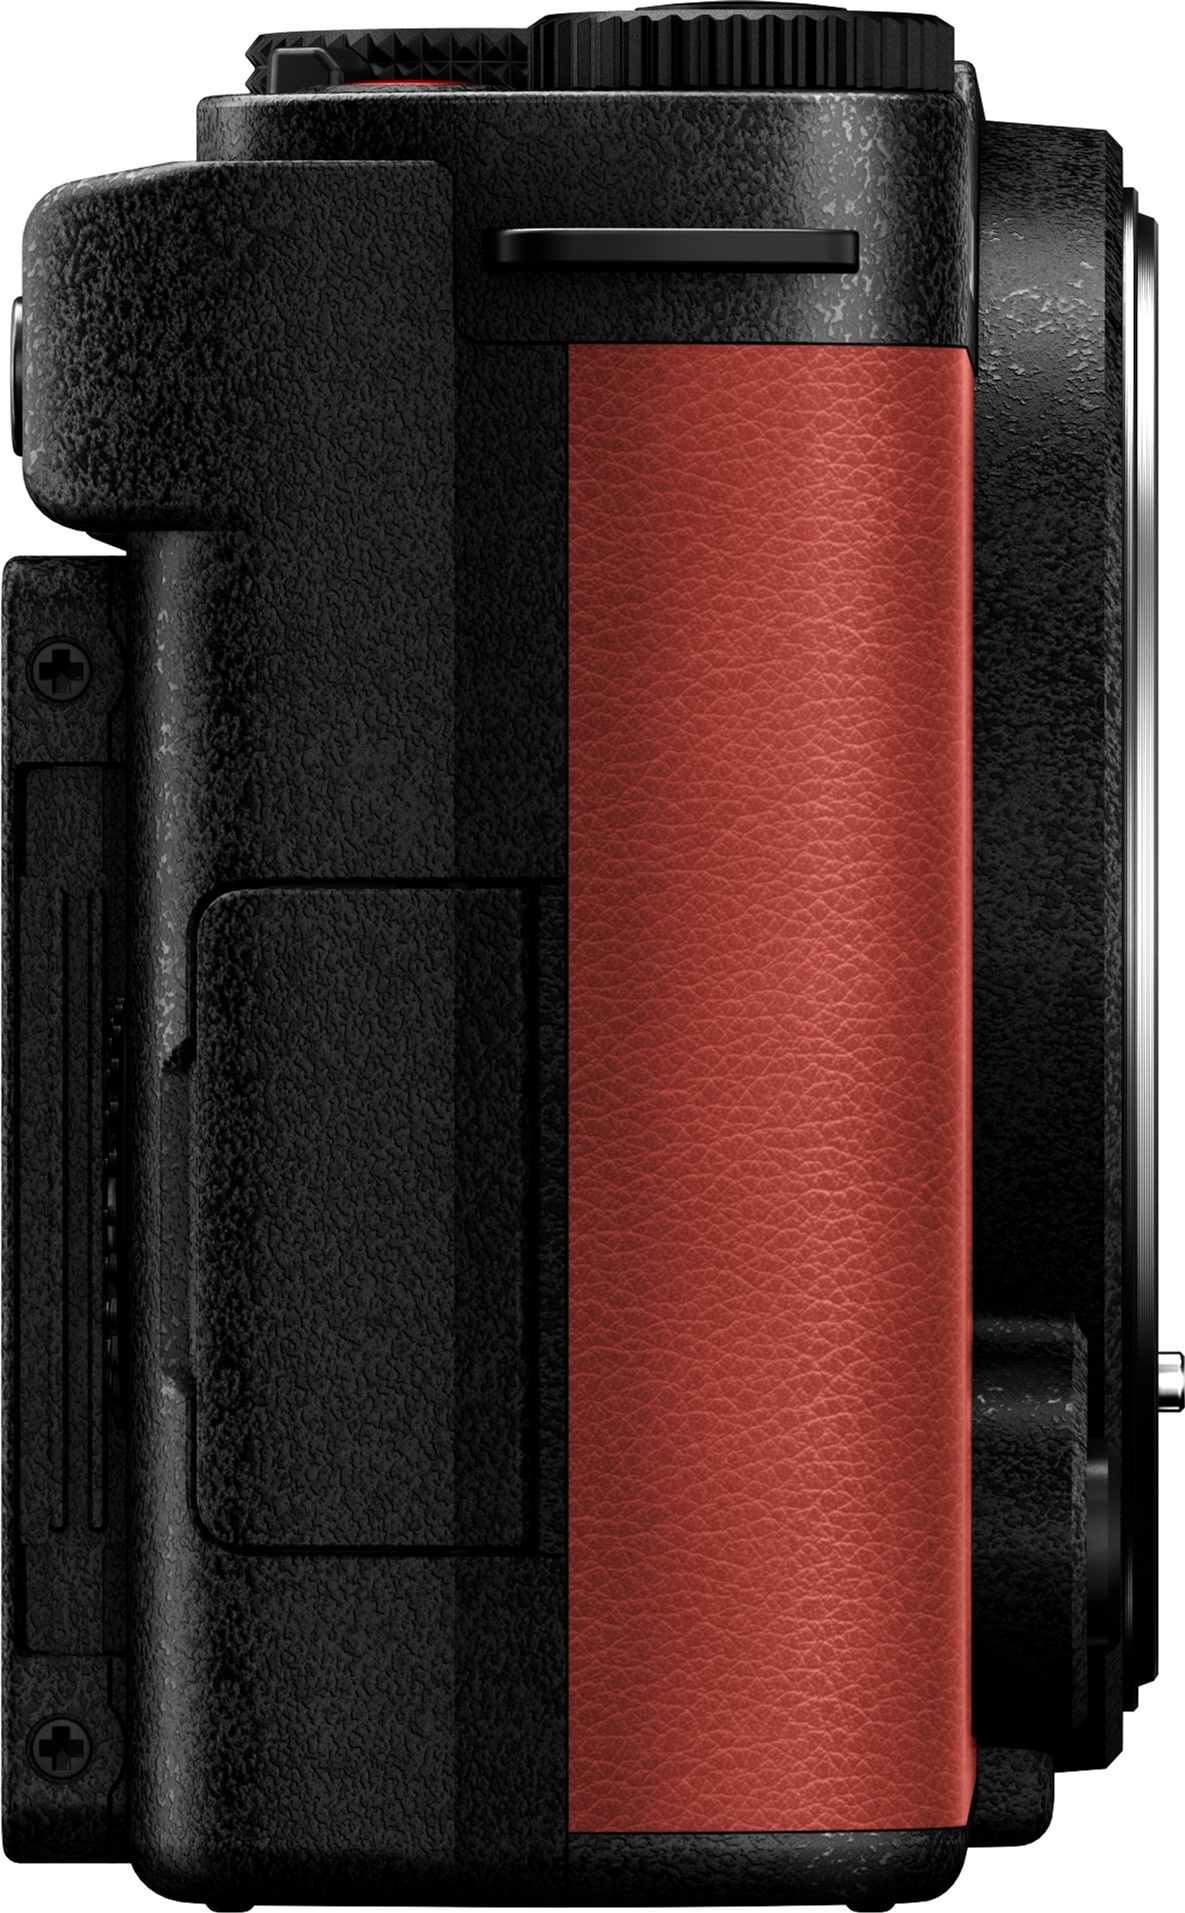 Фотоапарат Panasonic Lumix DC-S9 Body Crimson Red (DC-S9E-R)фото6